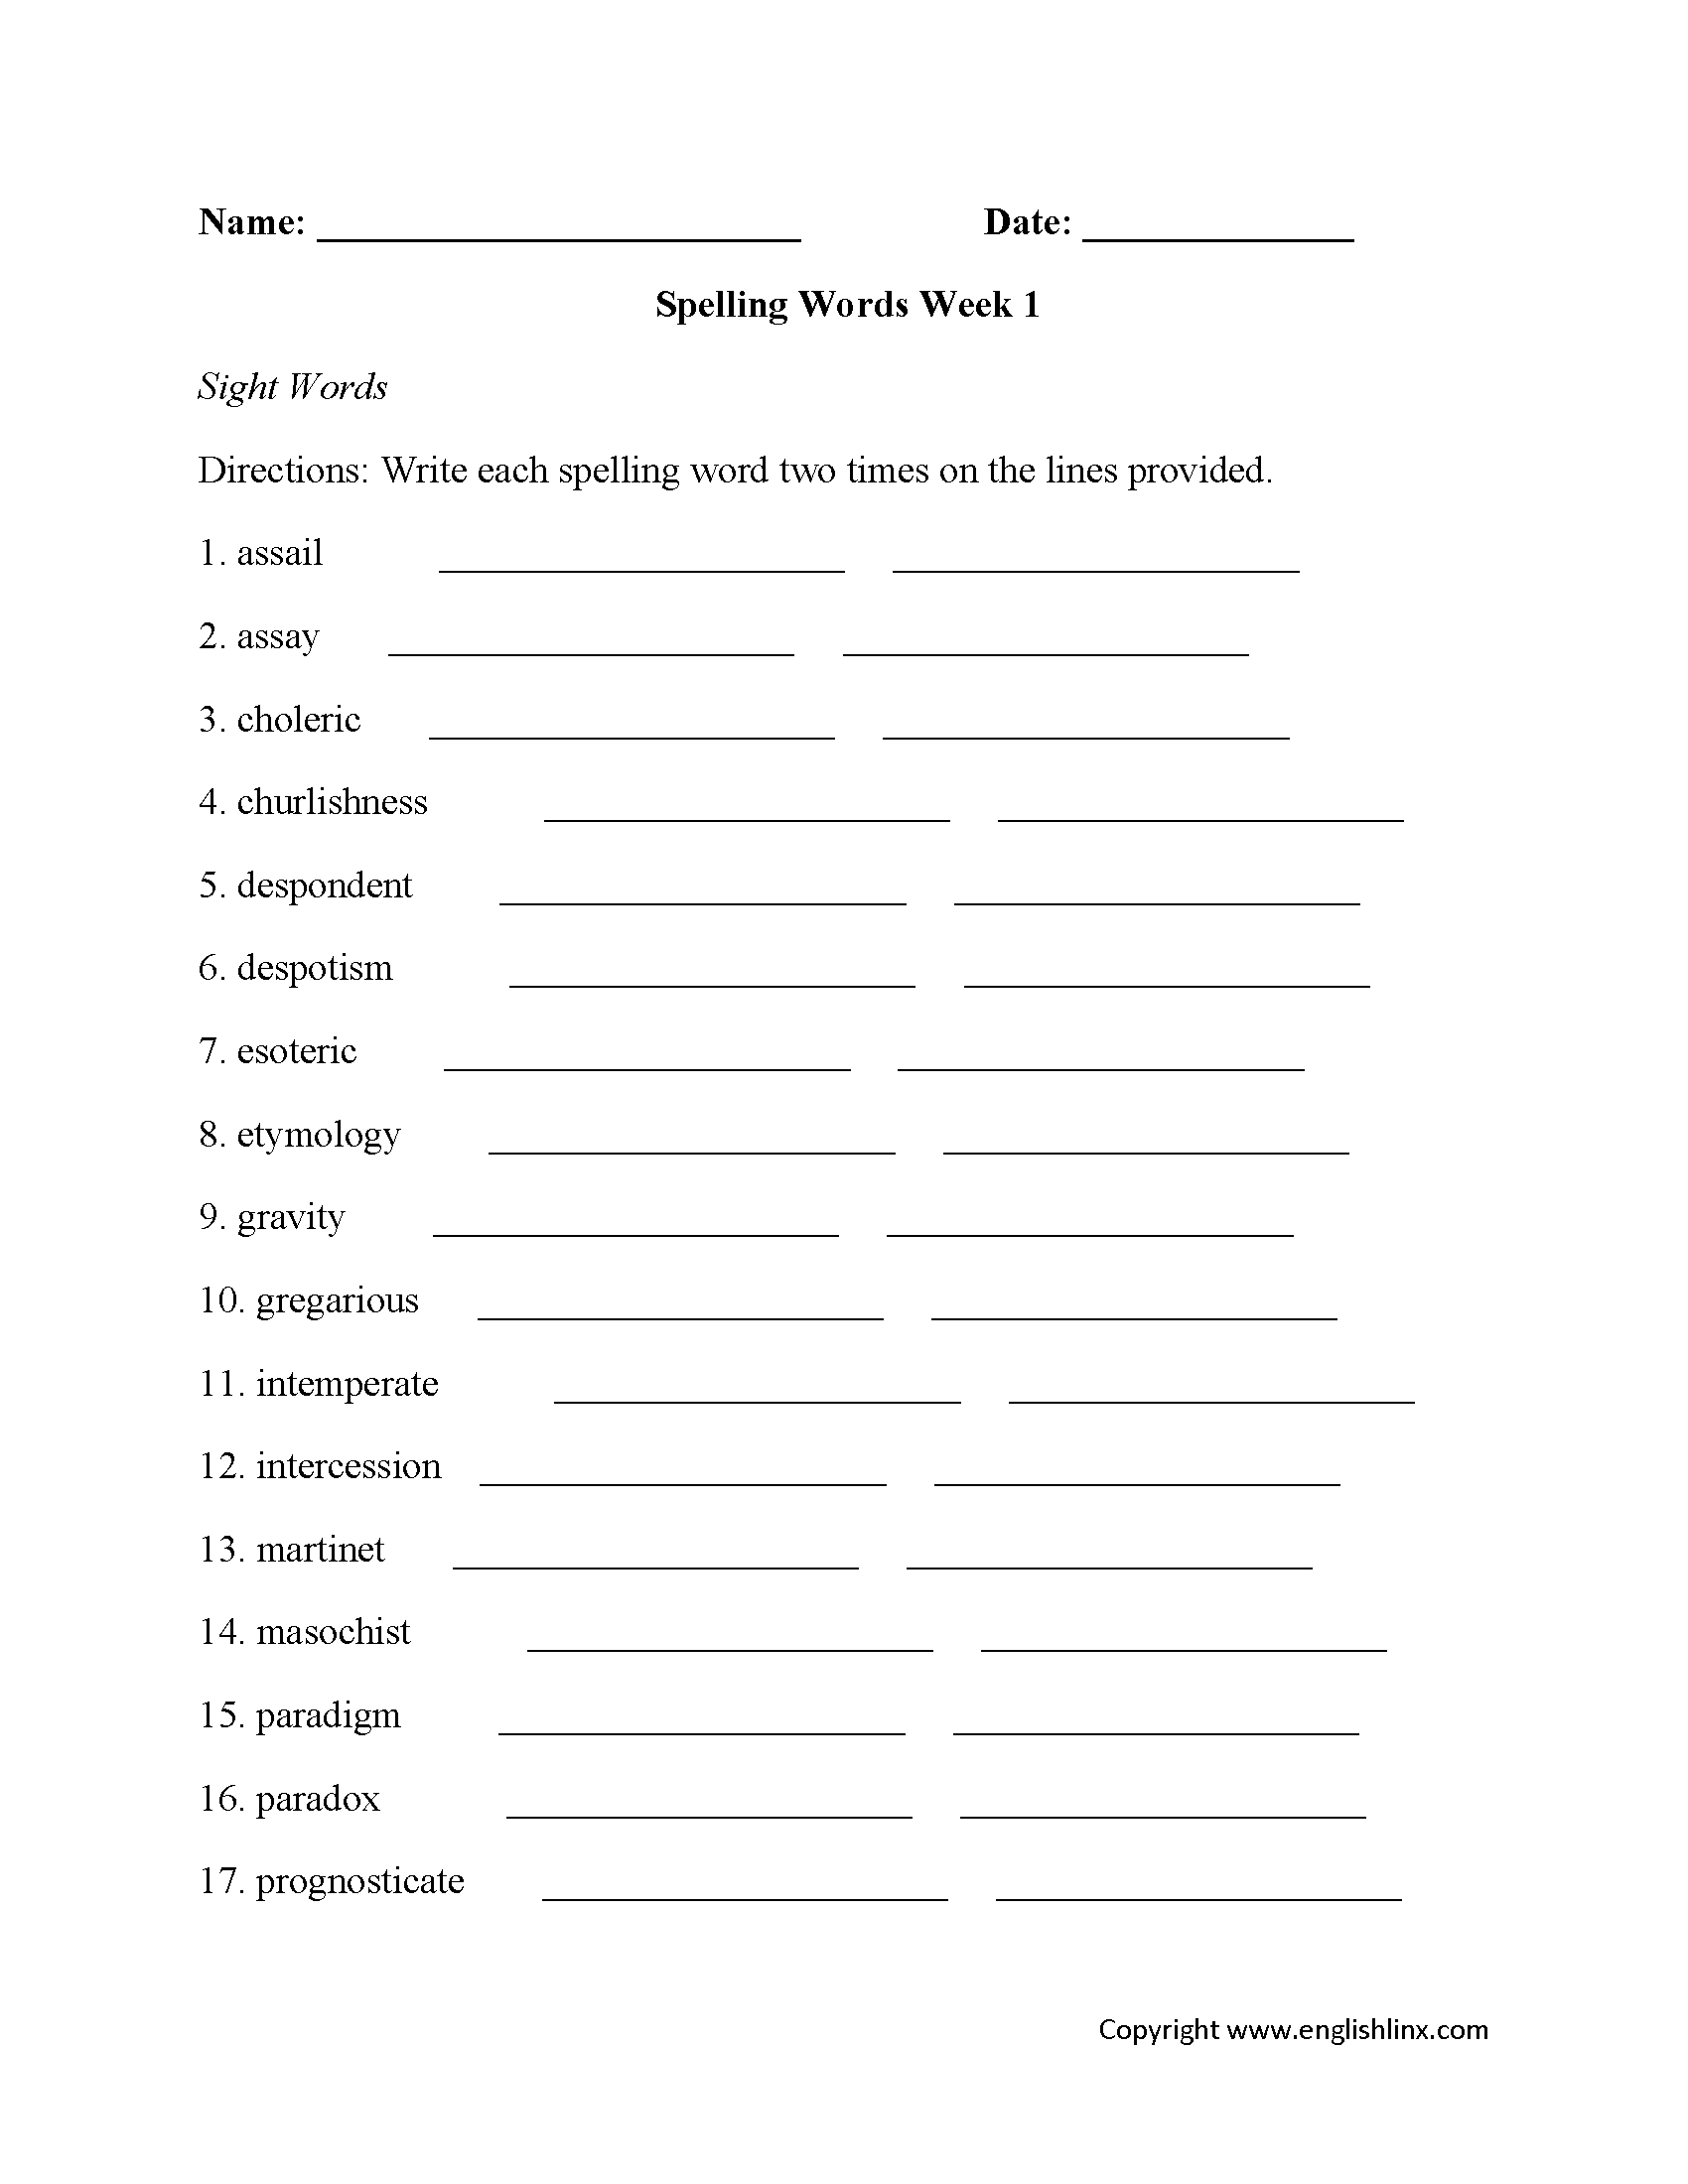 Spelling Worksheets | High School Spelling Worksheets | Free Printable Spelling Worksheets For Adults